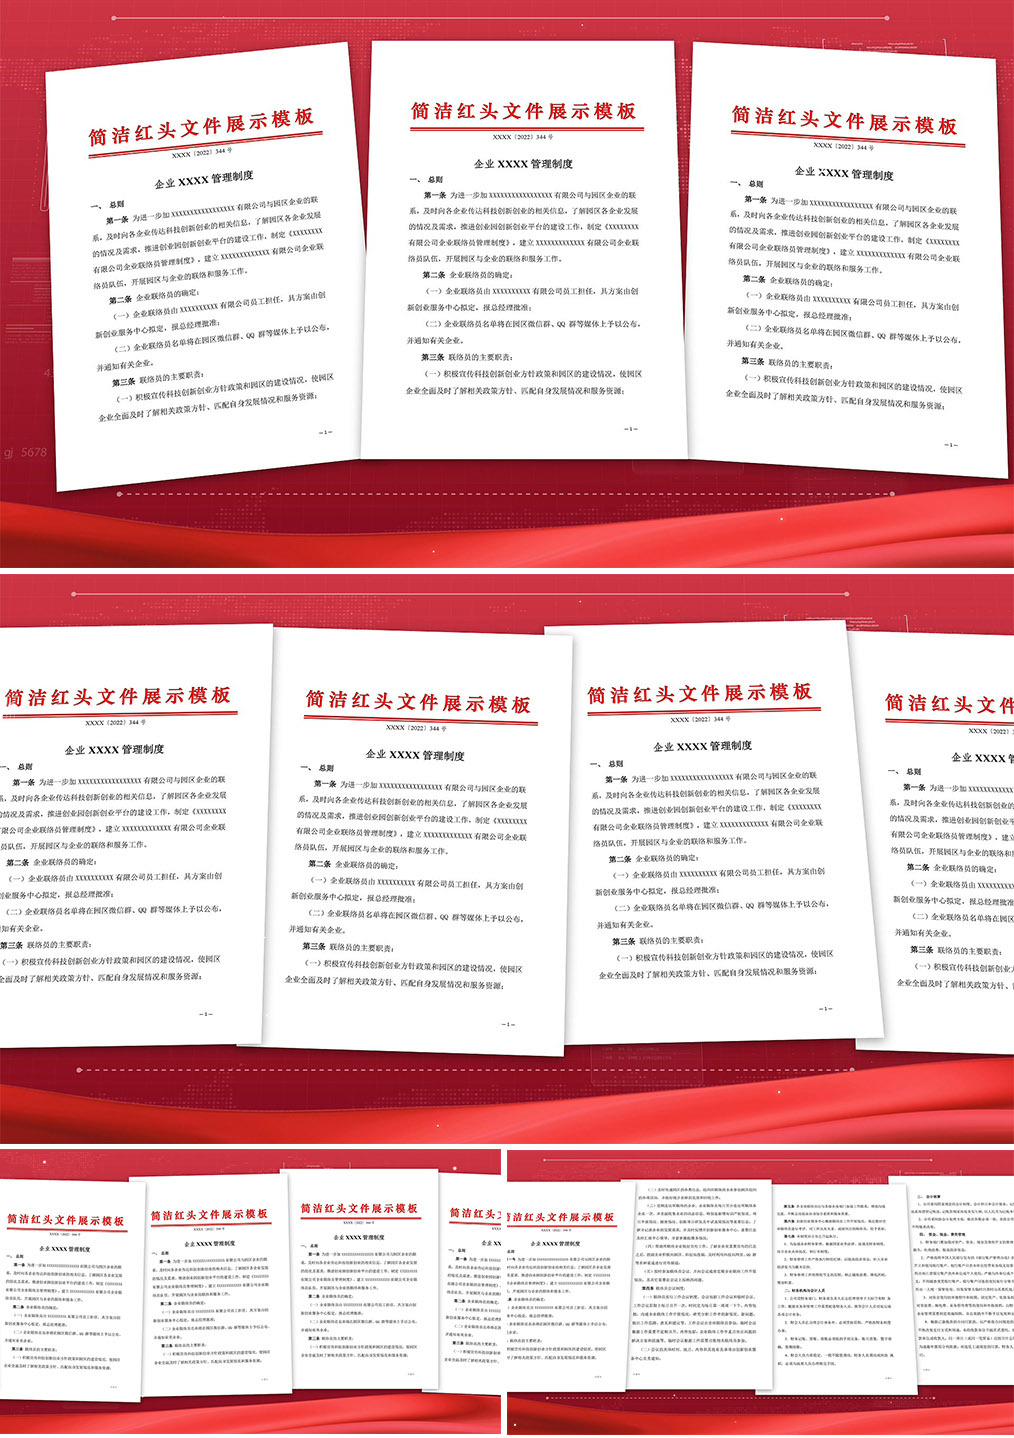 大气红色党政红头文件展示模板